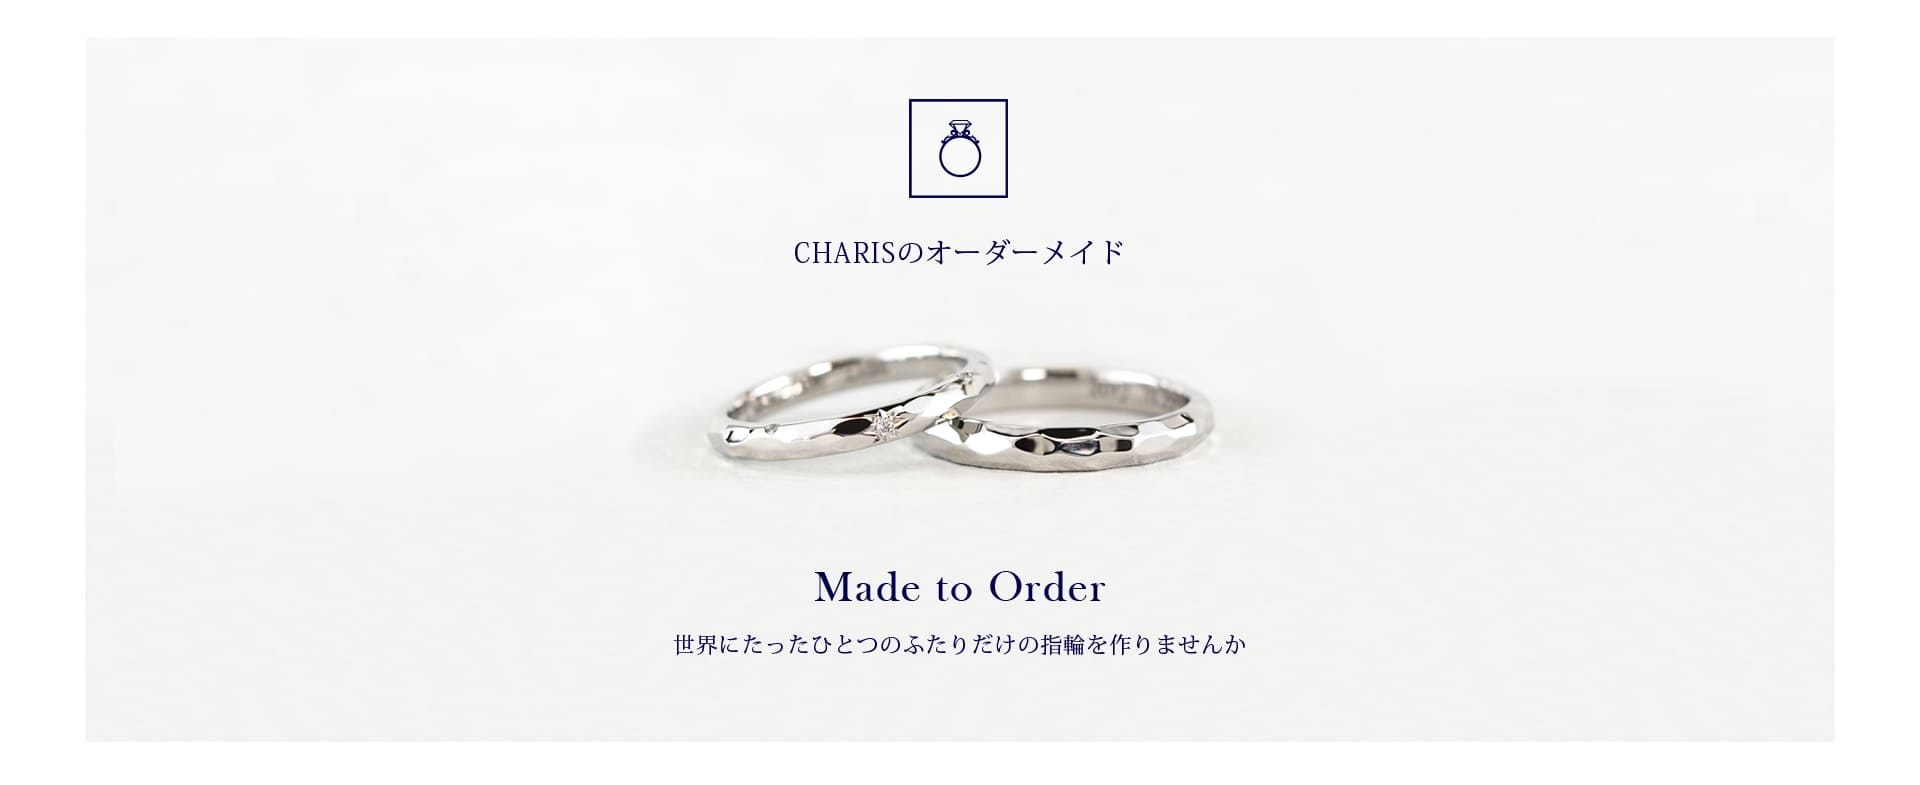 久留米市のCHARISが贈るオーダーメイドとアレンジする婚約指輪&結婚指輪